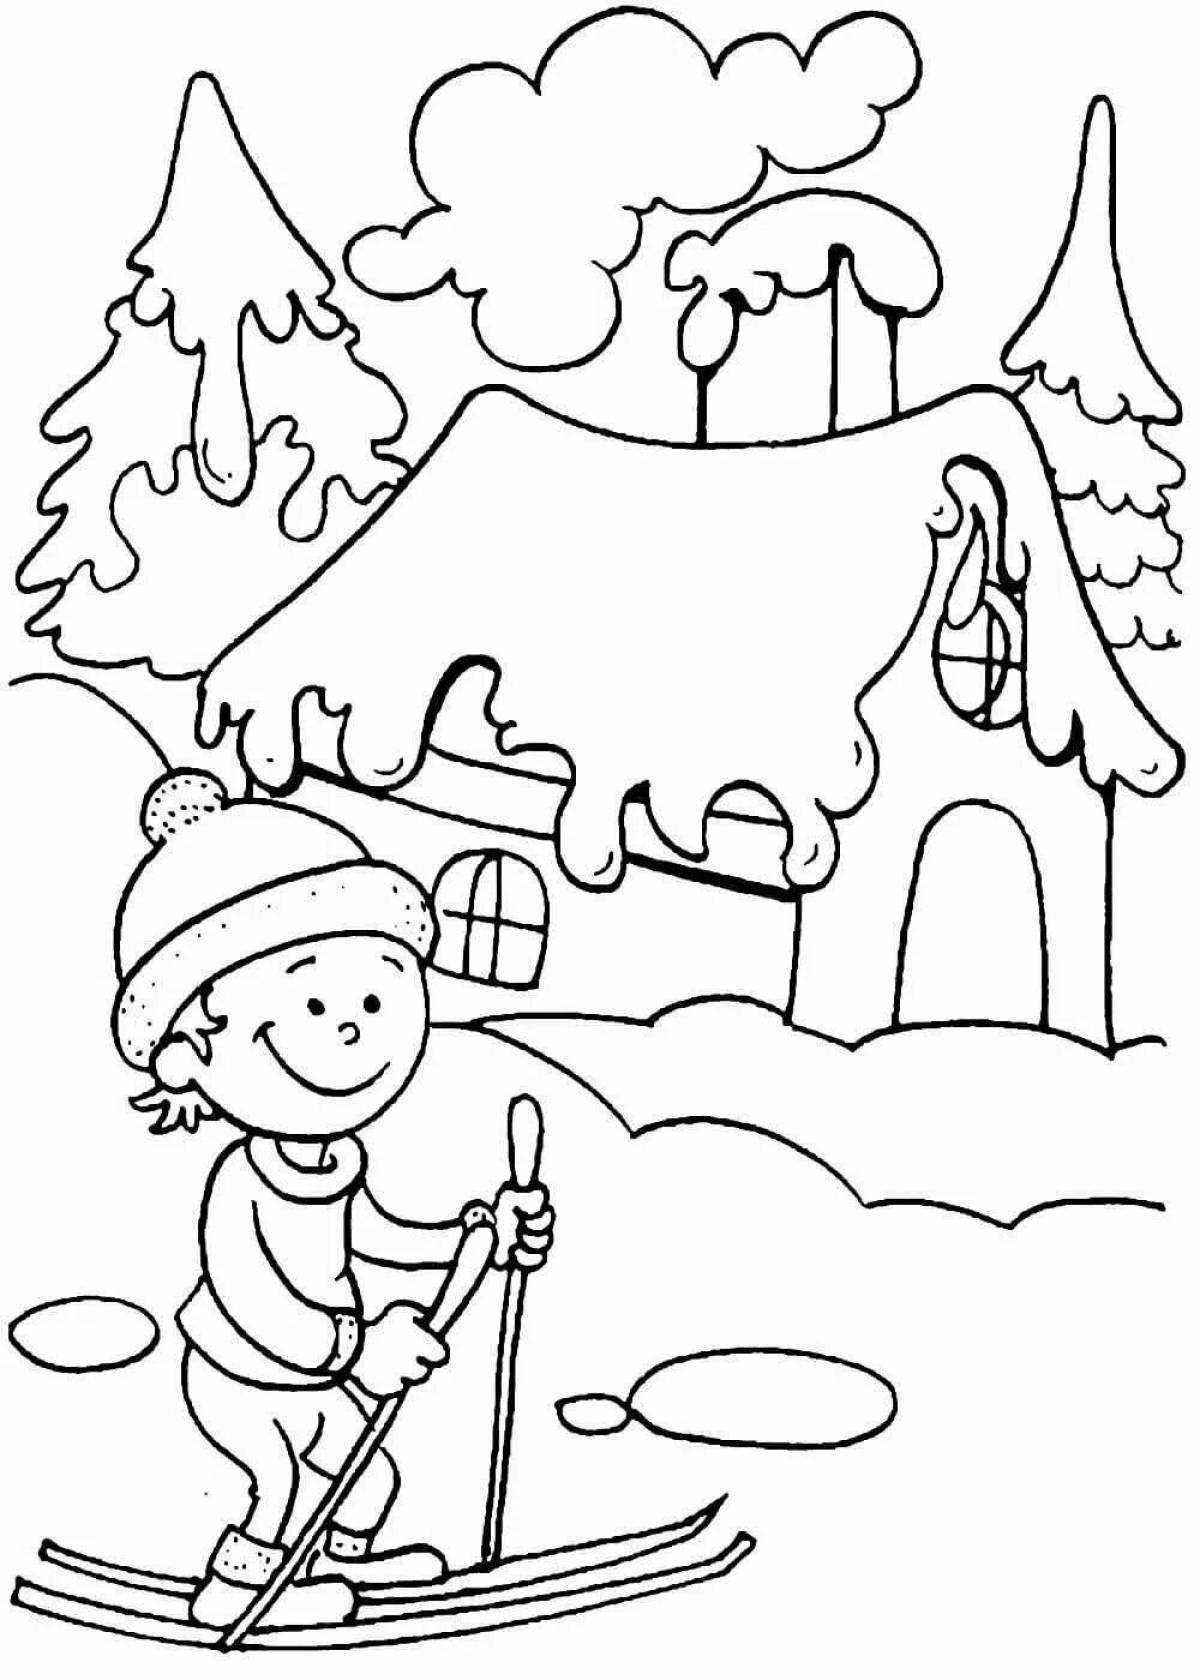 Generous winter season coloring book